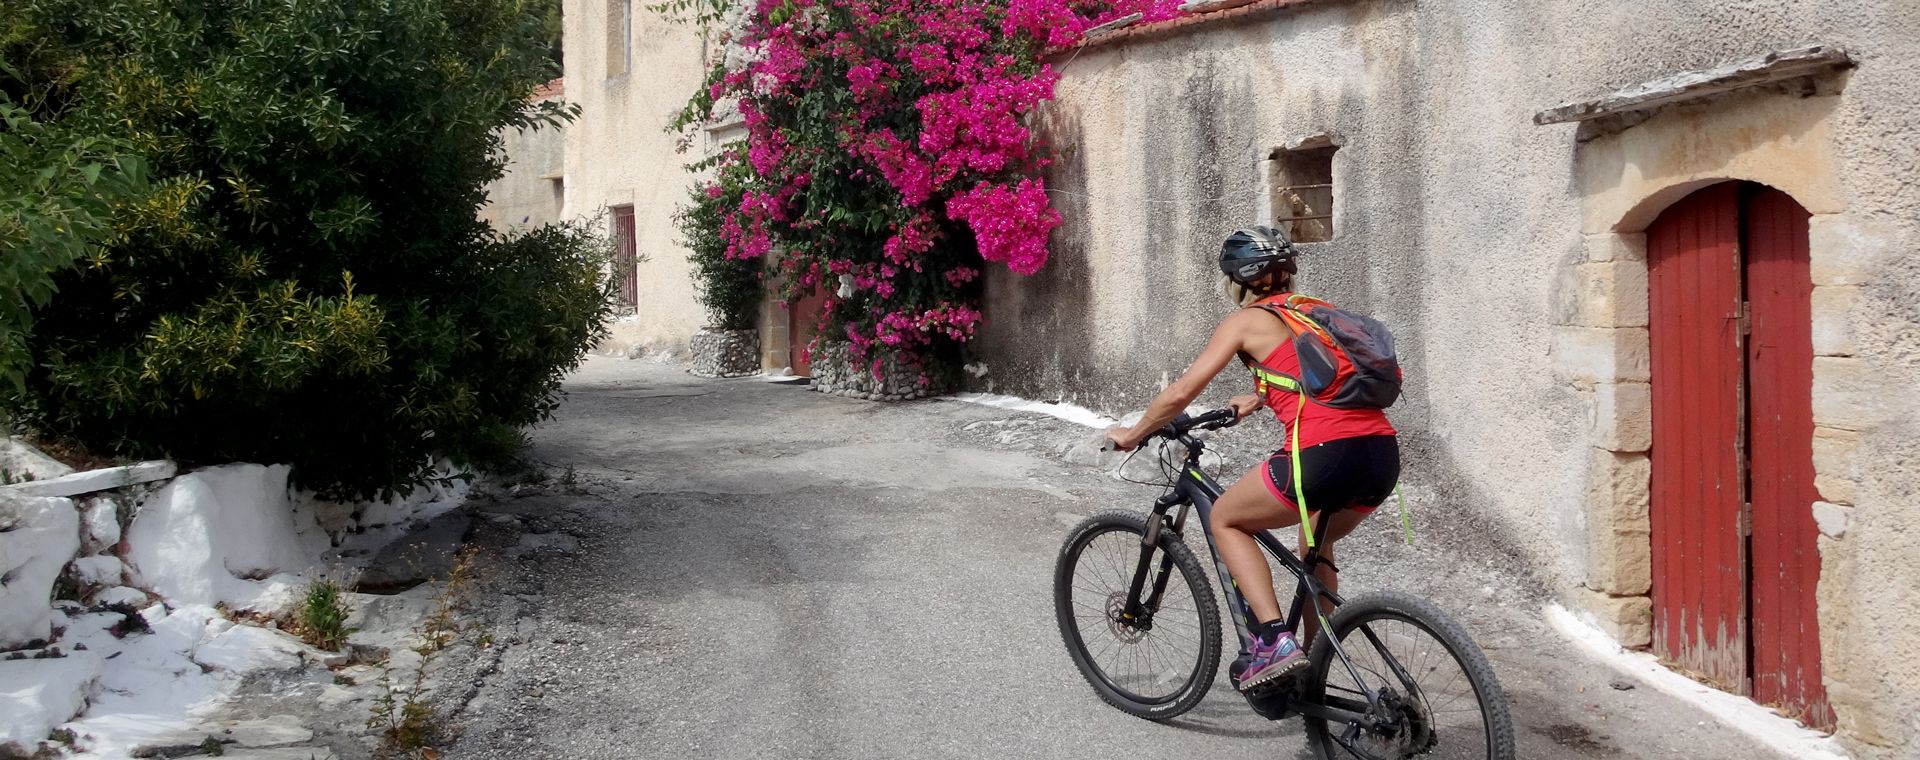 cycliste-village-crete